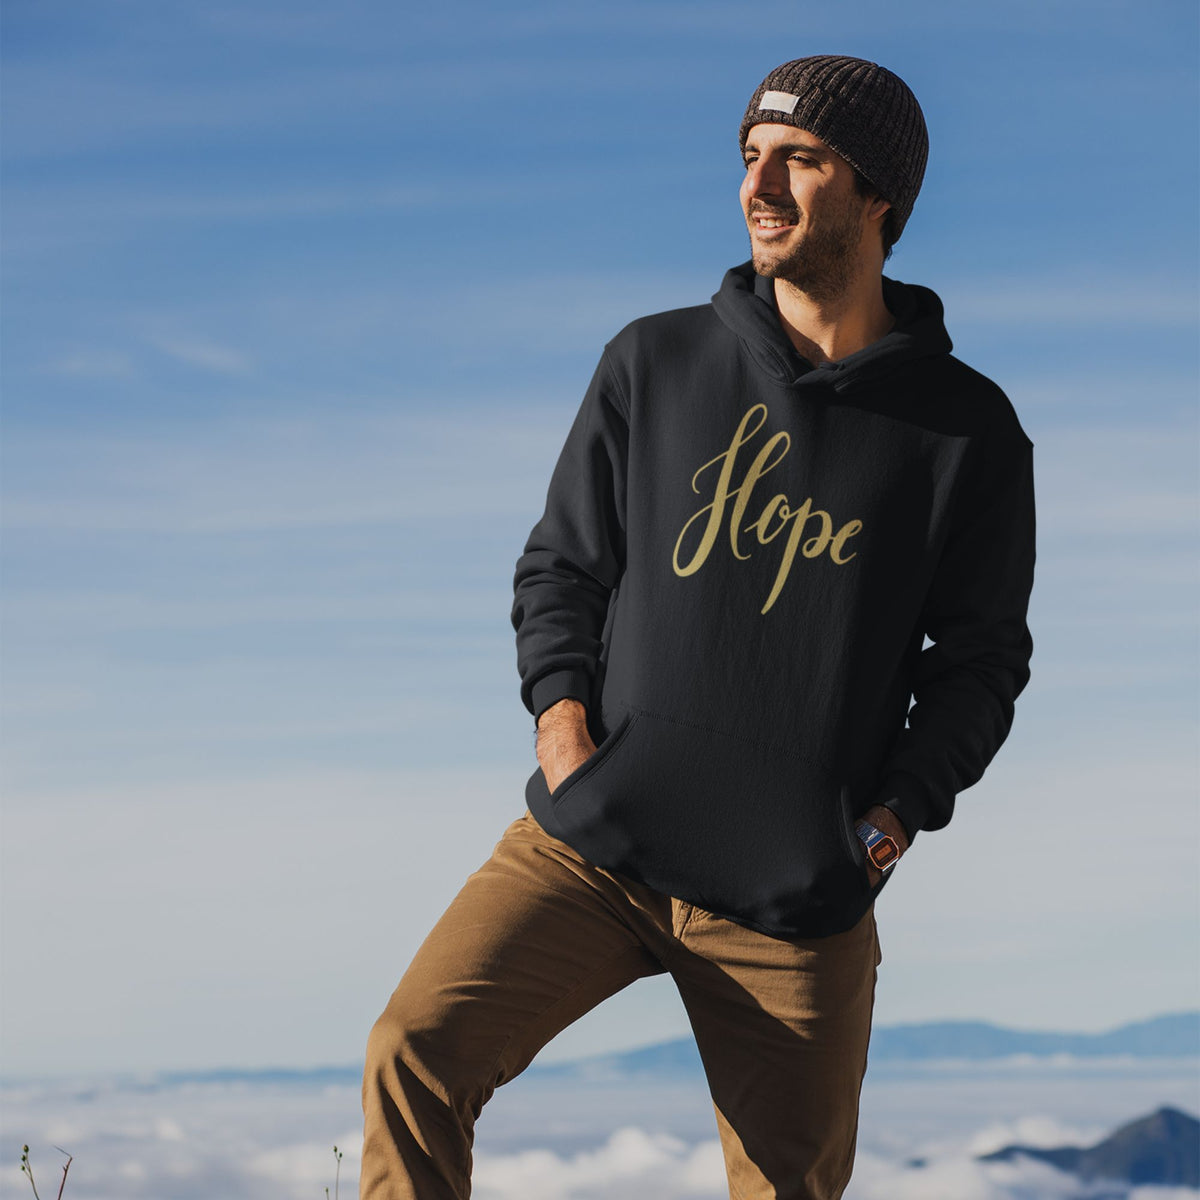    hope-black-printed-unisex-hoodie-gogirgit-com